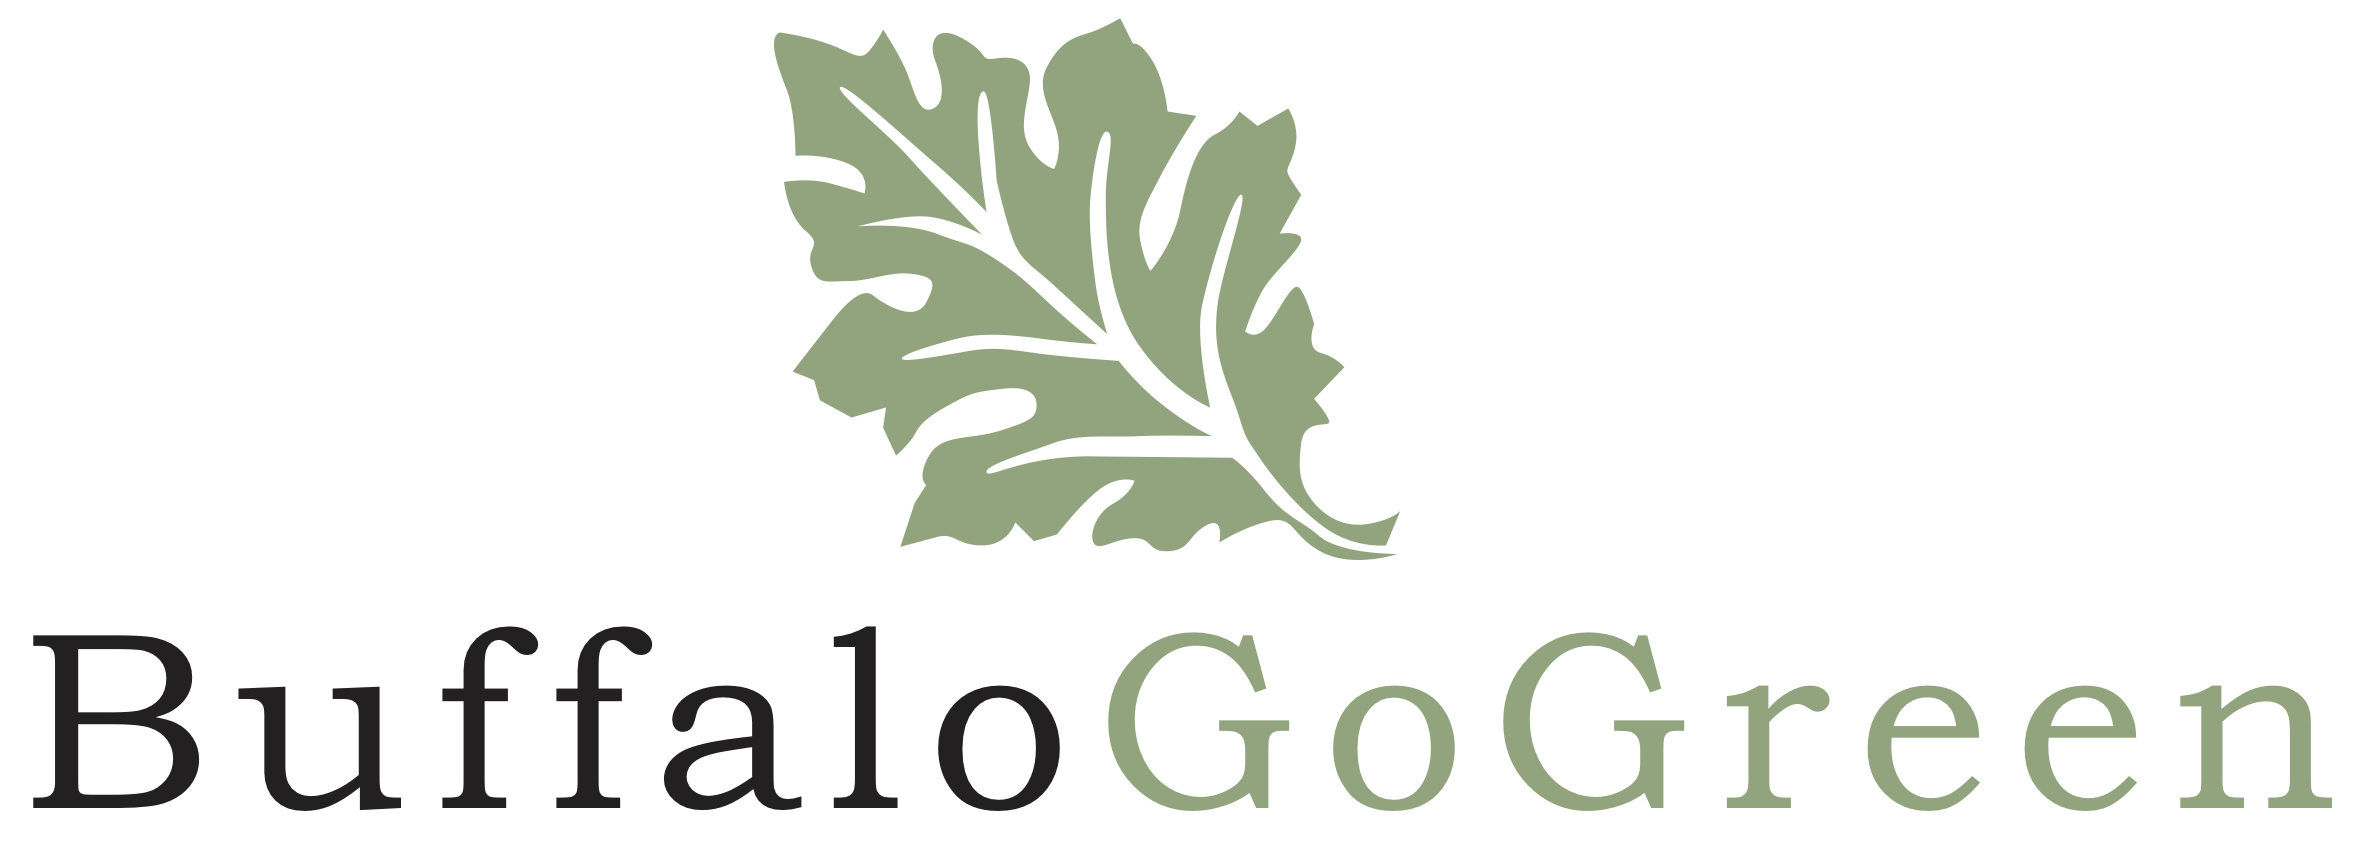 go green logo